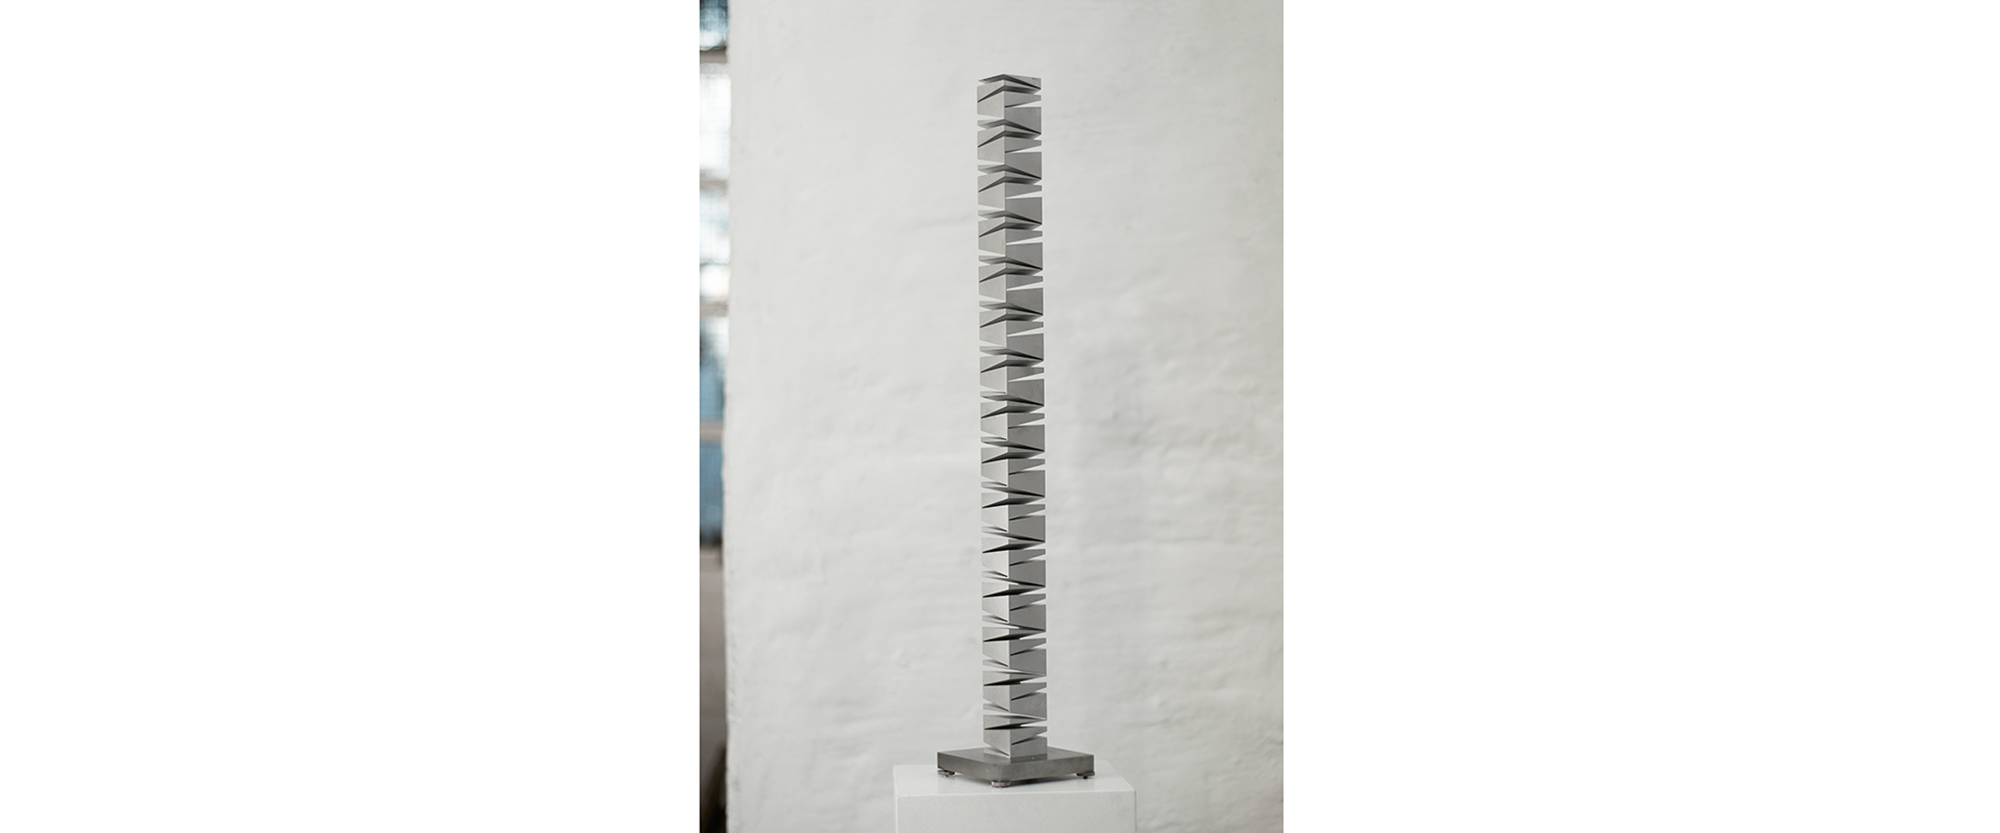 Massivstab, Keilschnitte vierseitig - 2018/2019, Duraluminium, zweiachsig geschnitten, auf Aluminiumplatte, Ex. 2/8, Höhe 60 cm, Grundplatte 10 x 10 cm